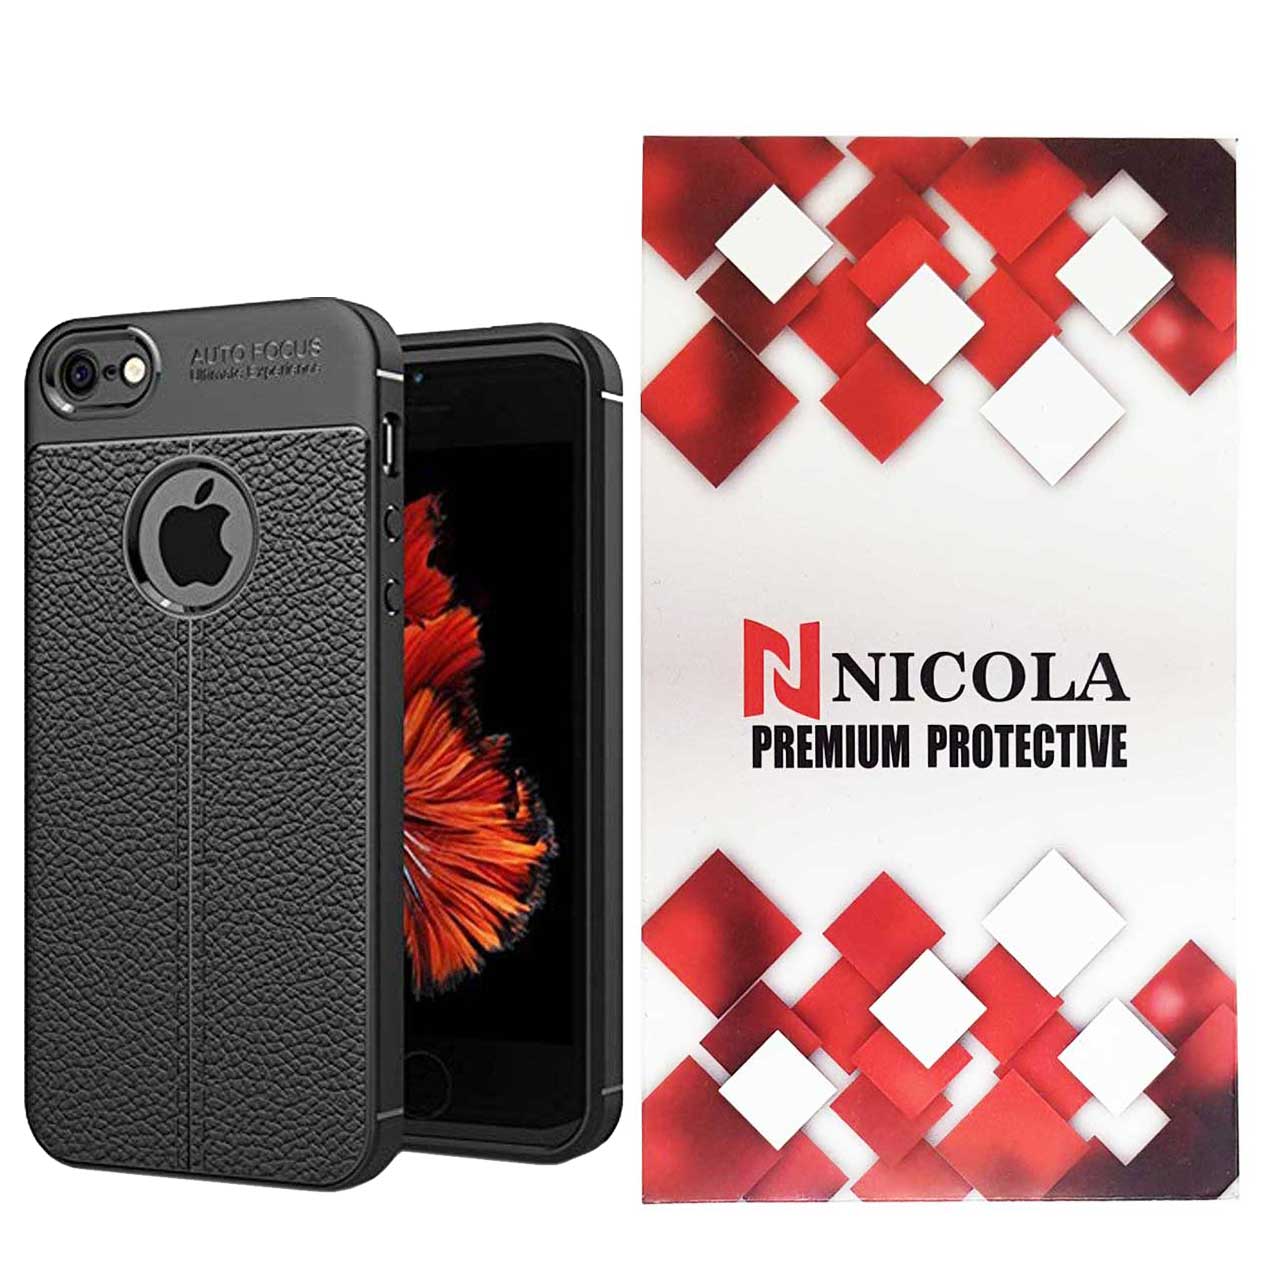 نقد و بررسی کاور نیکلا مدل N_ATO مناسب برای گوشی موبایل اپل Iphone 5/5s/SE توسط خریداران